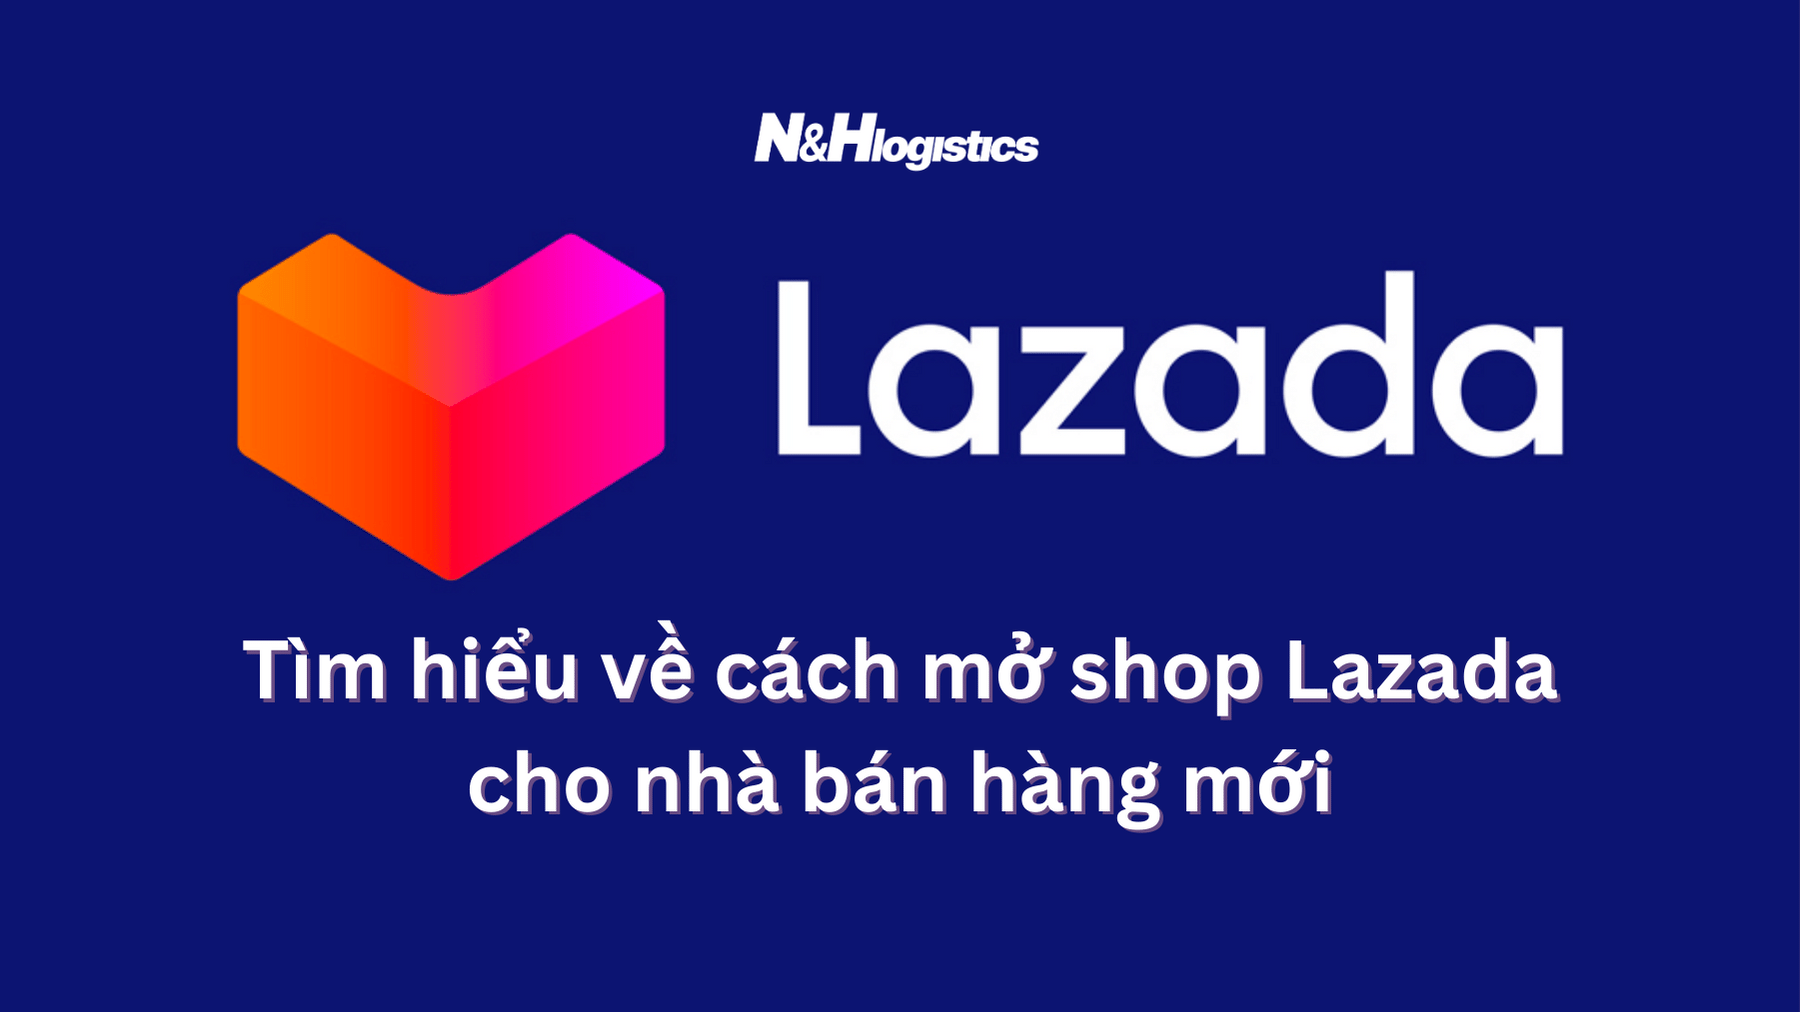 Quý khách hàng có thể tìm hiểu các mở shop Lazada tại N&H Logistics